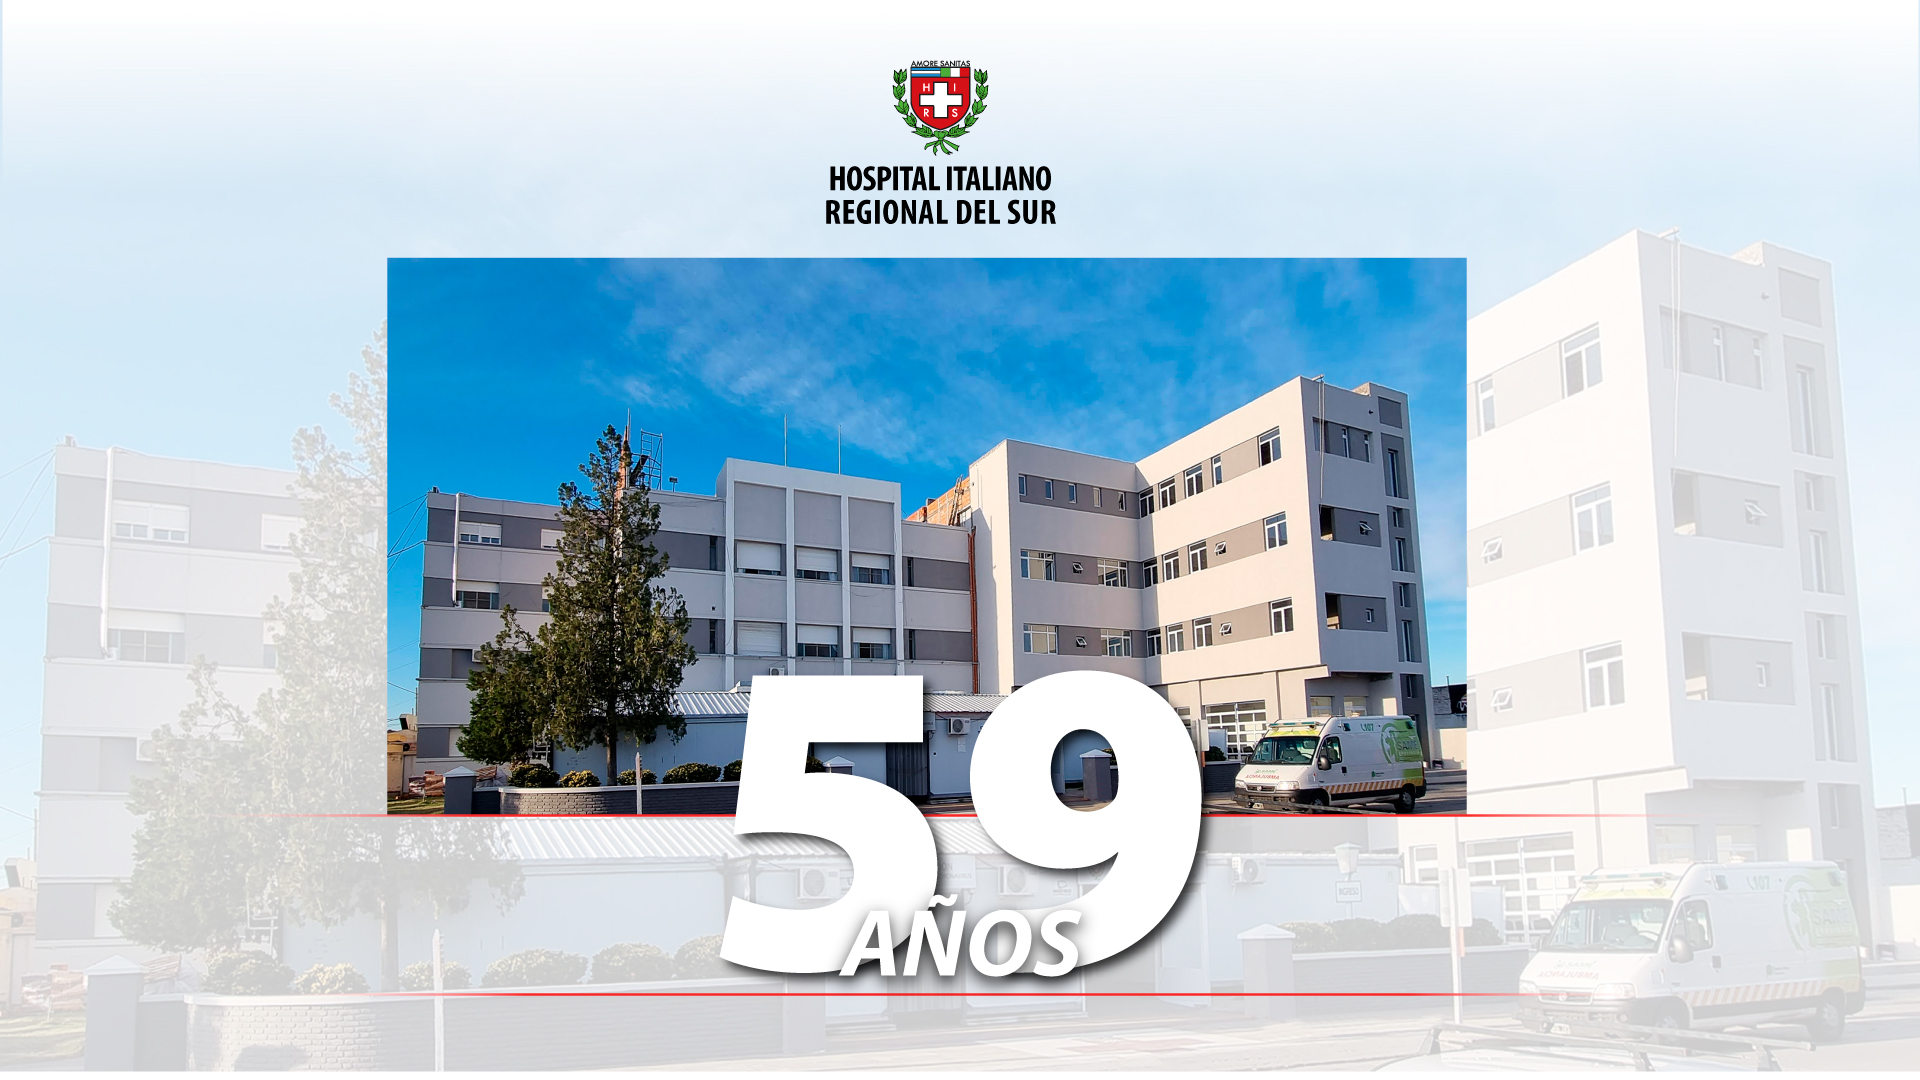 Aniversario 2023 - Hospital Italiano Regional del Sur